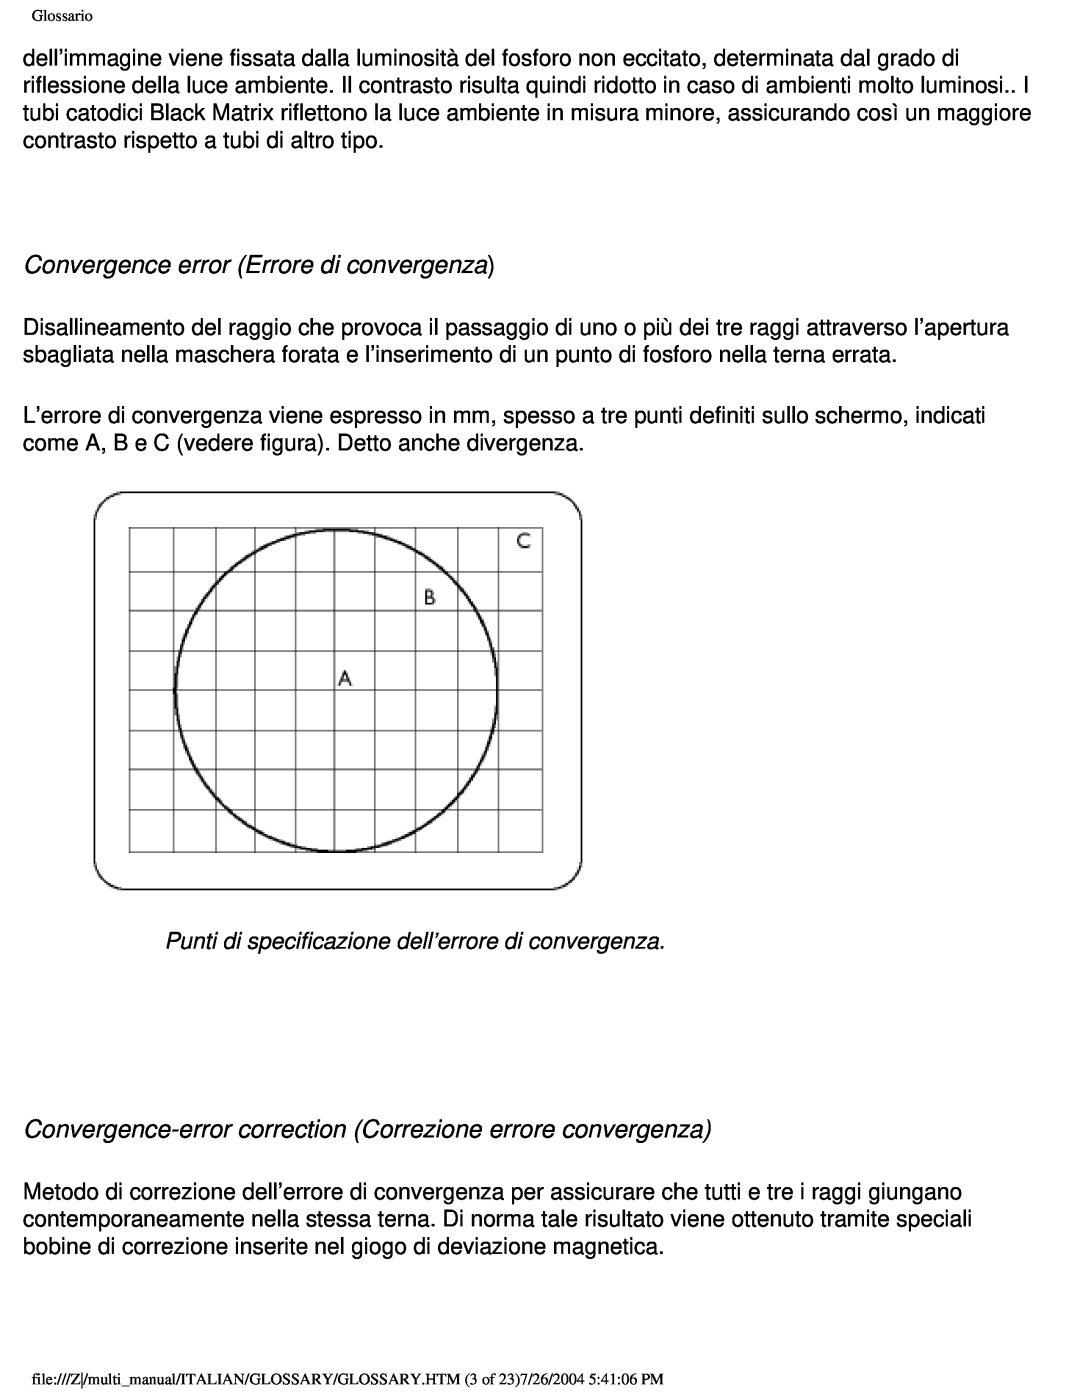 Philips 201B user manual Convergence error Errore di convergenza, Glossario 